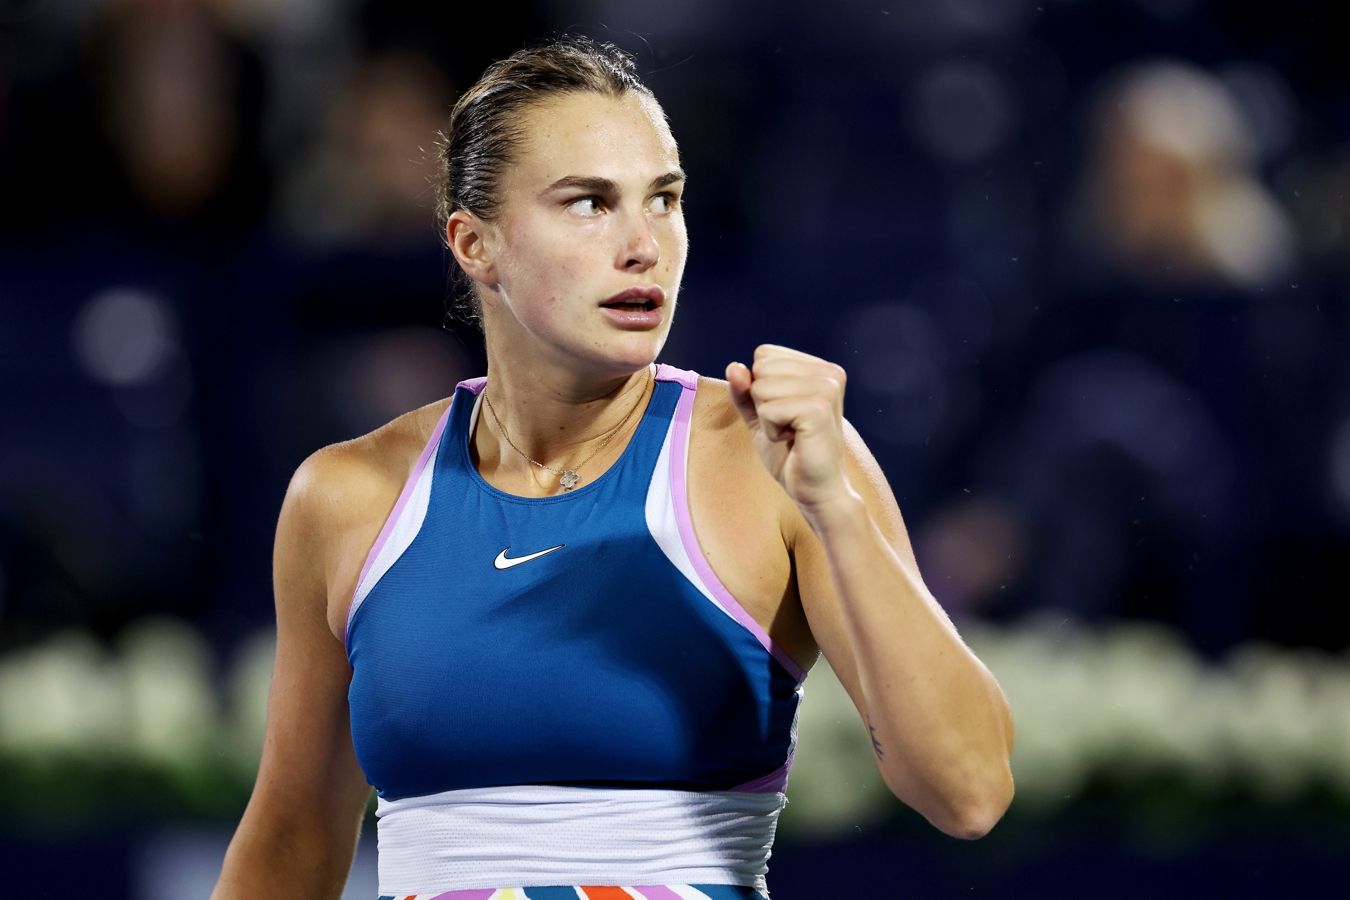 Арина Соболенко вышла в 1/8 финала турнира в Мадриде, в трёх сетах обыграв Монтгомери